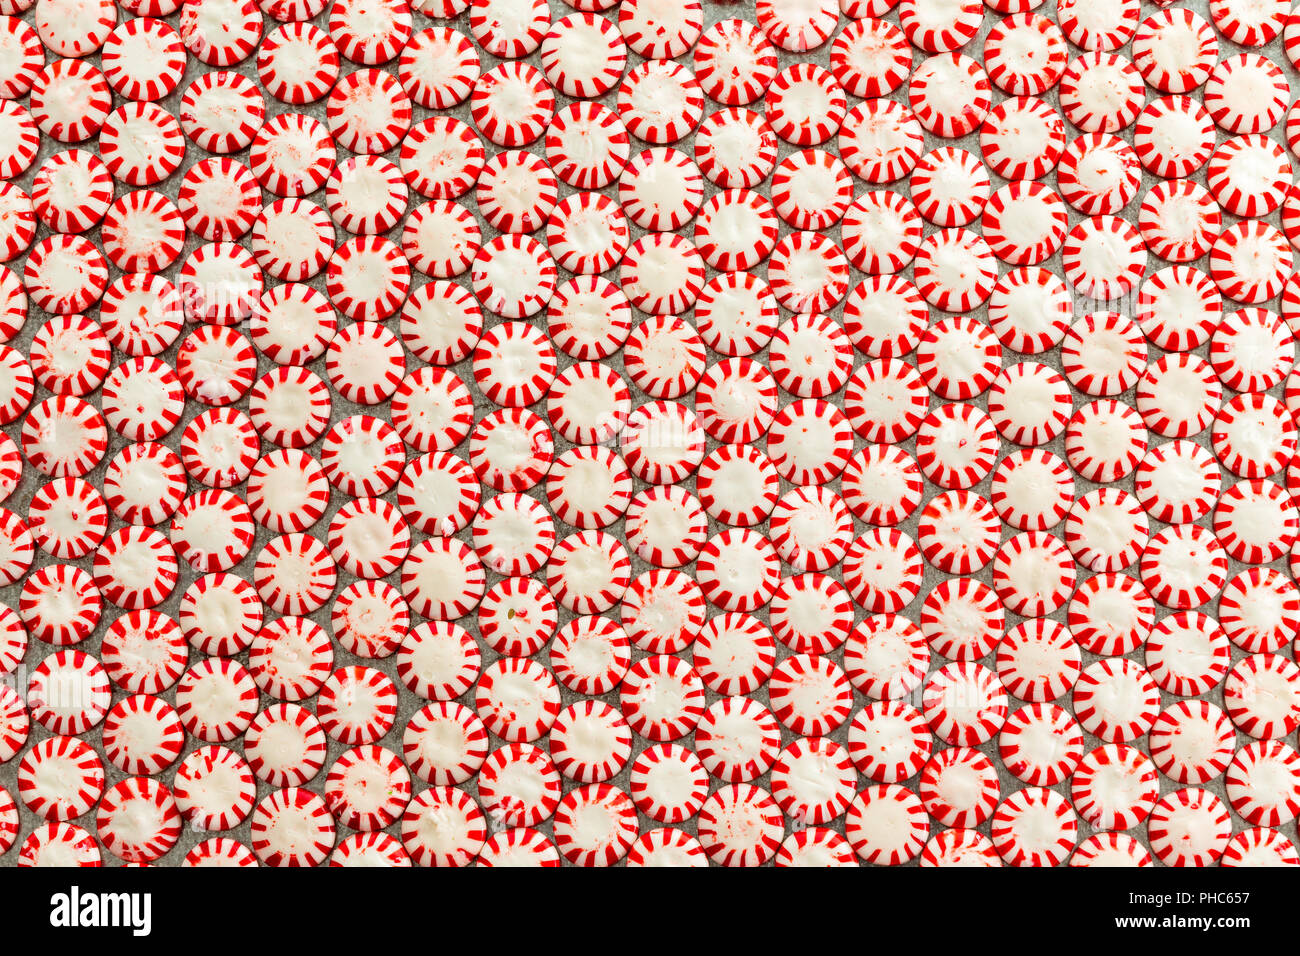 La texture et le motif de fond de rouge et blanc à rayures colorées à saveur de menthe bonbons starlight proches les unes des autres dans une couche bien vue Banque D'Images